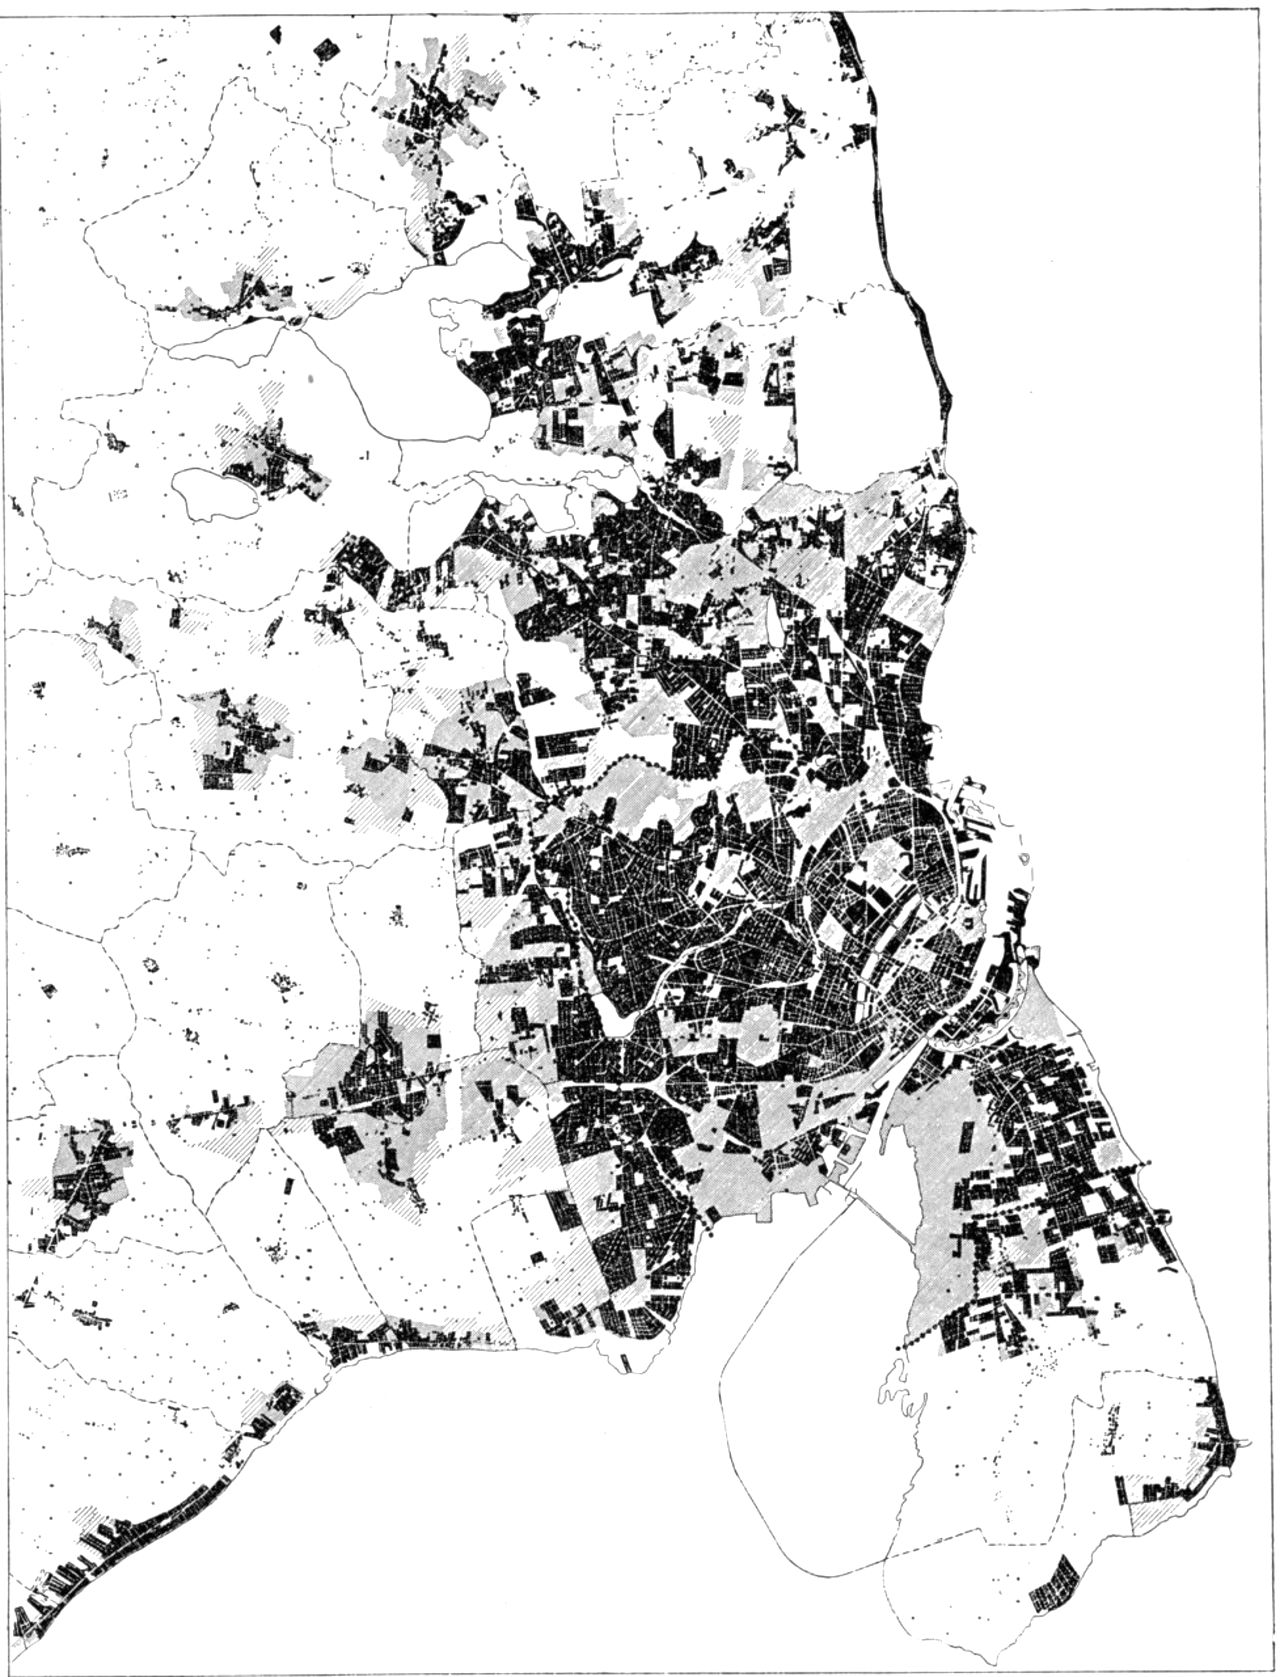 (Kort). Byudviklingsplanerne for Københavns-egnen 1951 og 1954. Med sort er angivet bebyggelsen 1950, tæt skravering: inderzone og åben skravering: mellemzone. Byvæksten er – som i egnsplanskitsen – søgt begrænset til oplandet omkring S-banerne.